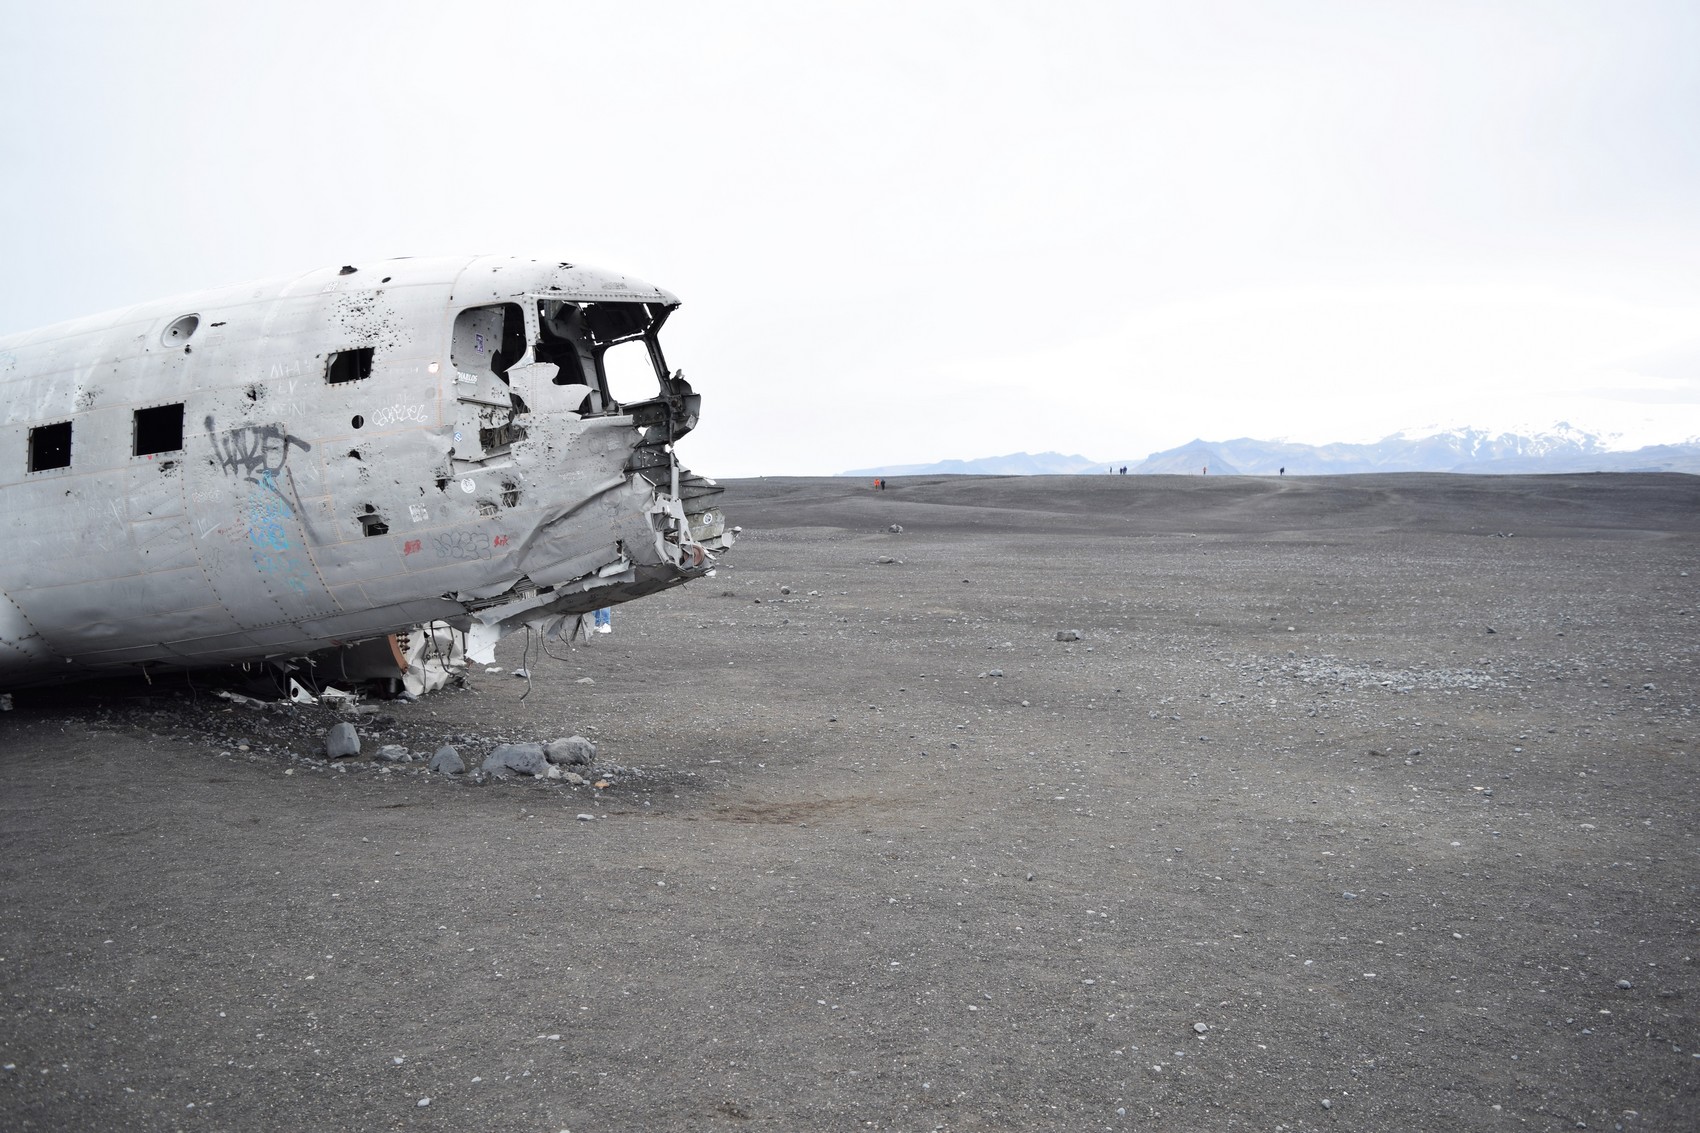  la carcasse d'avion de Solheimasandur